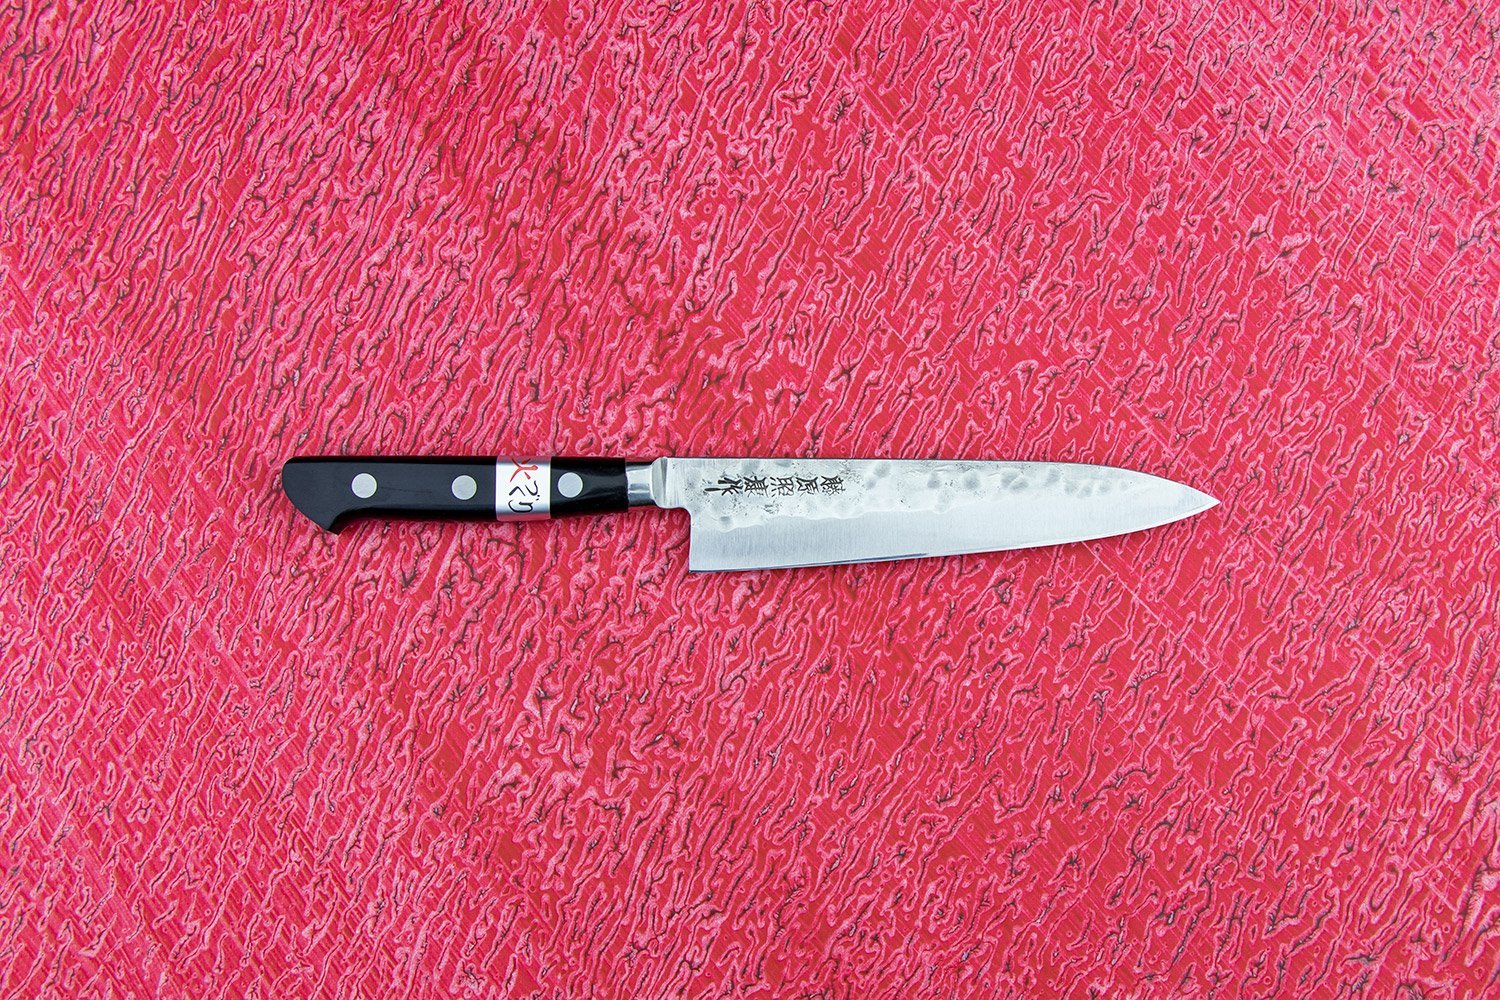 Japanese Folding Knife - Brass – November 19 Shop